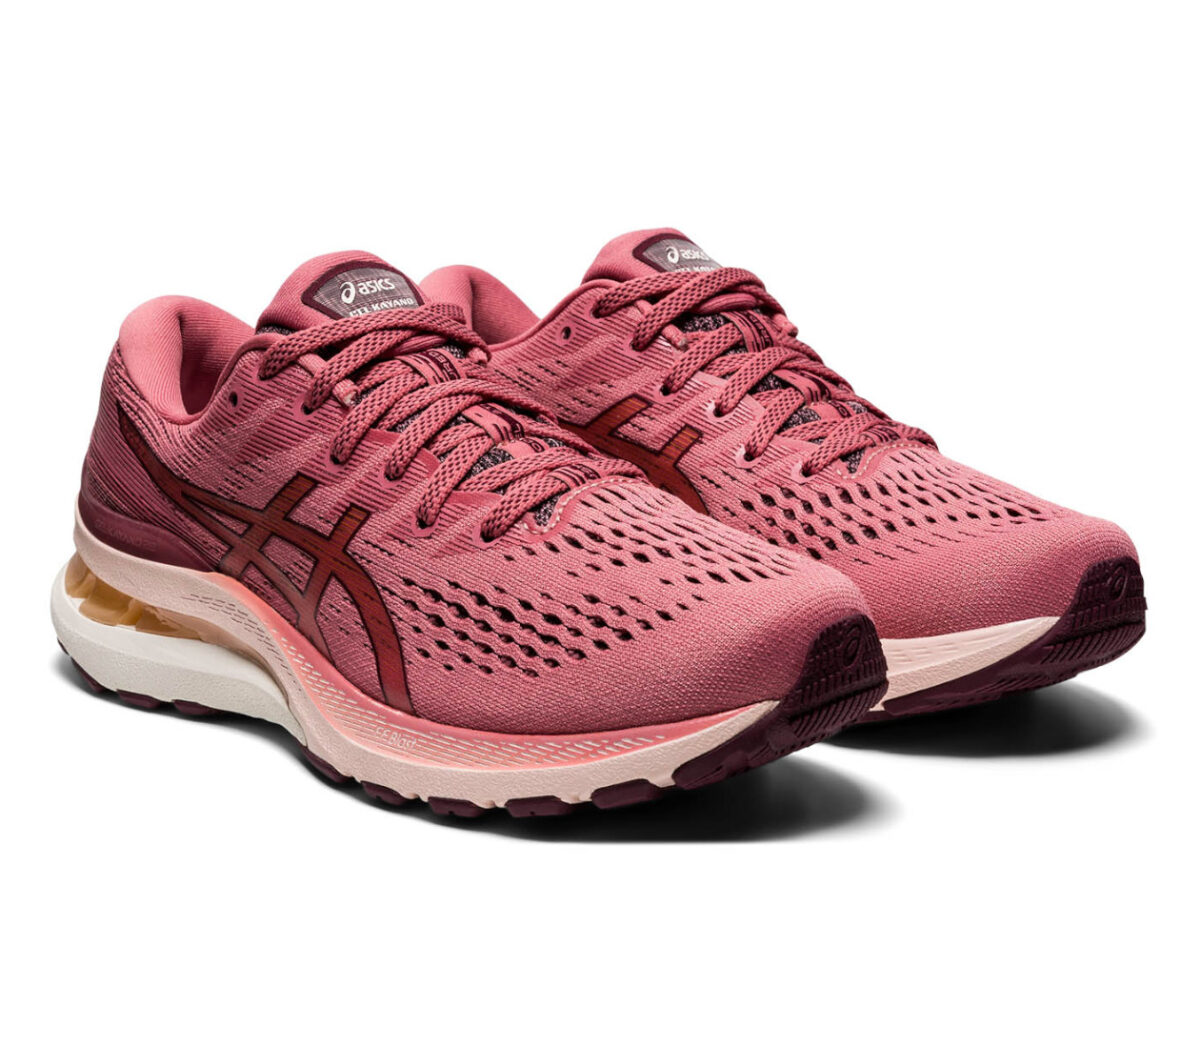 coppia scarpe da running donna asics gel kayano 28 rosa